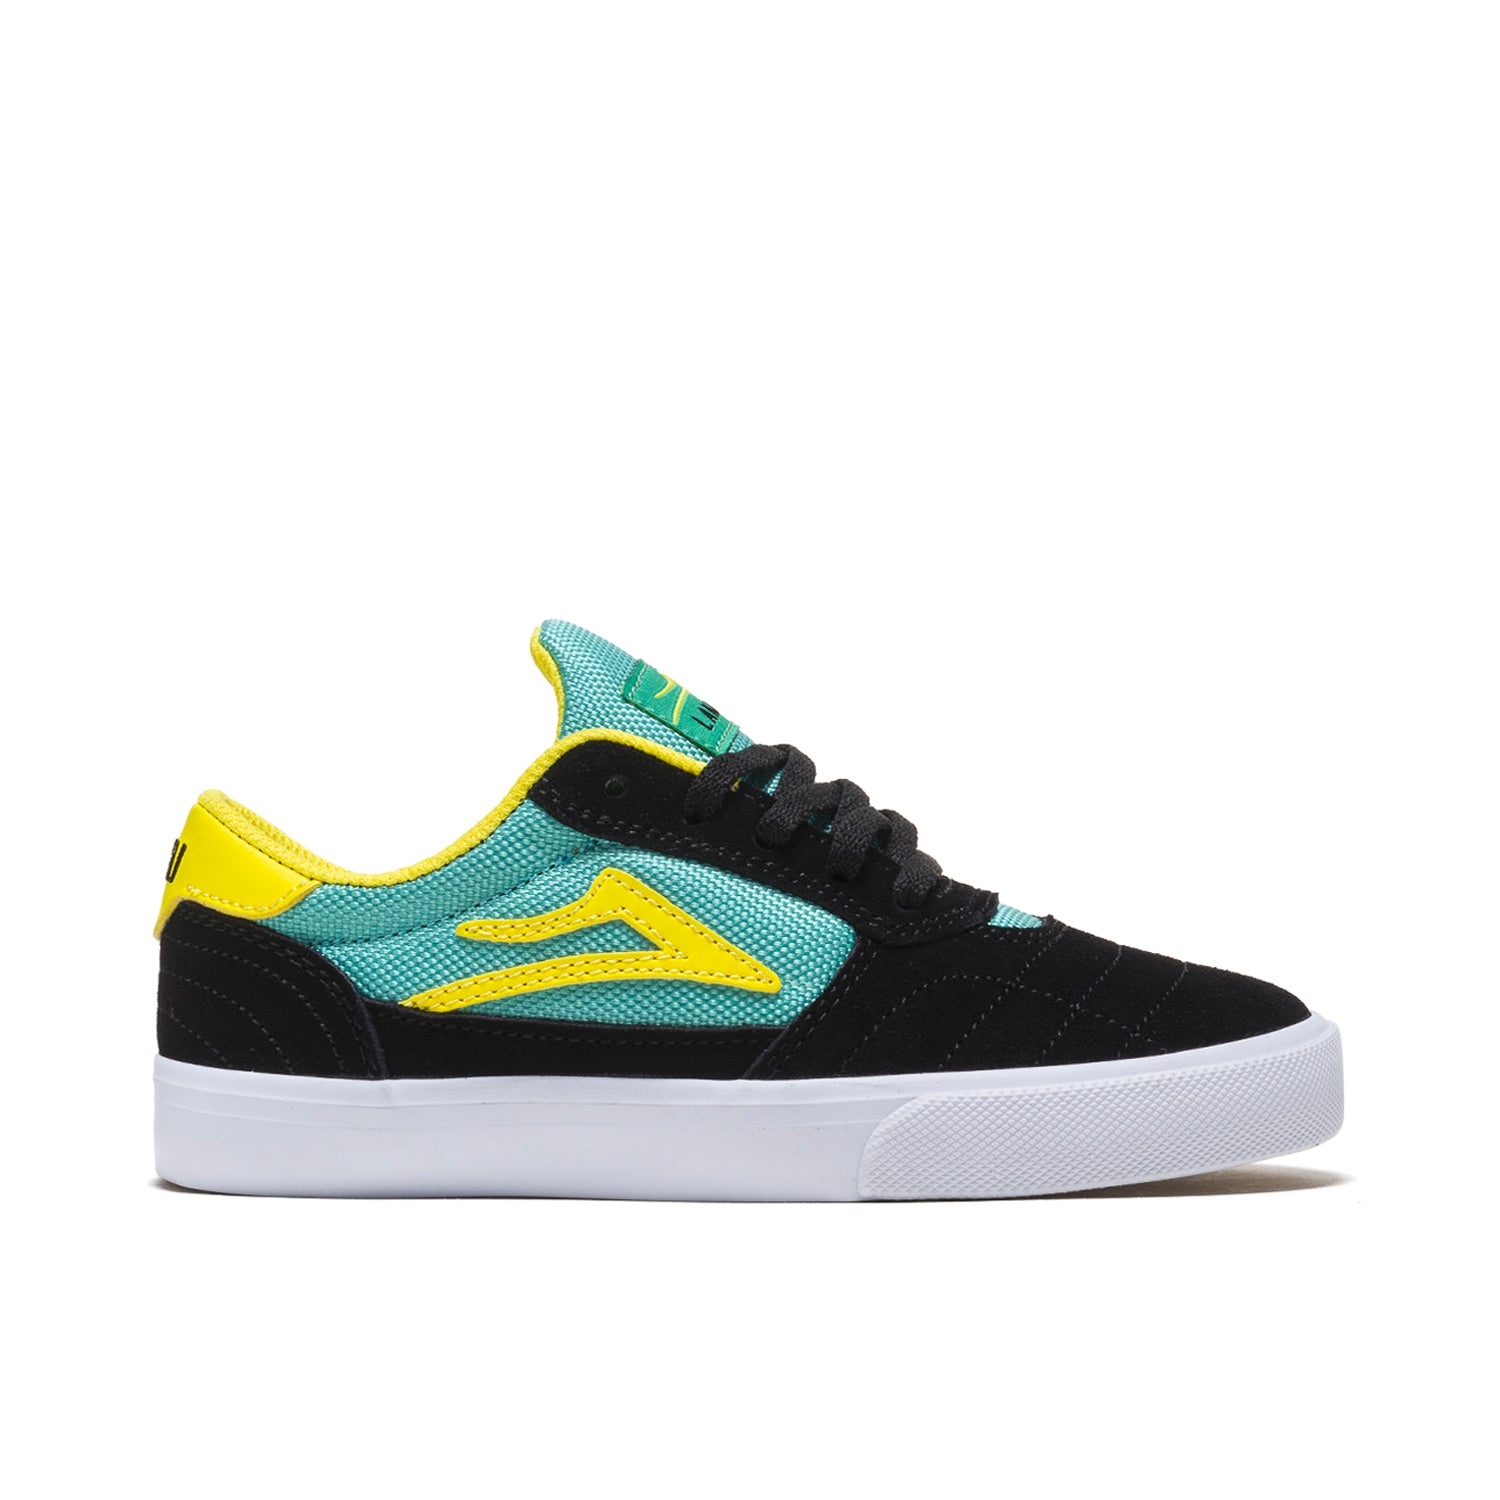 Lakai Cambridge Kids Skate Shoes - Black/Teal - Prime Delux Store